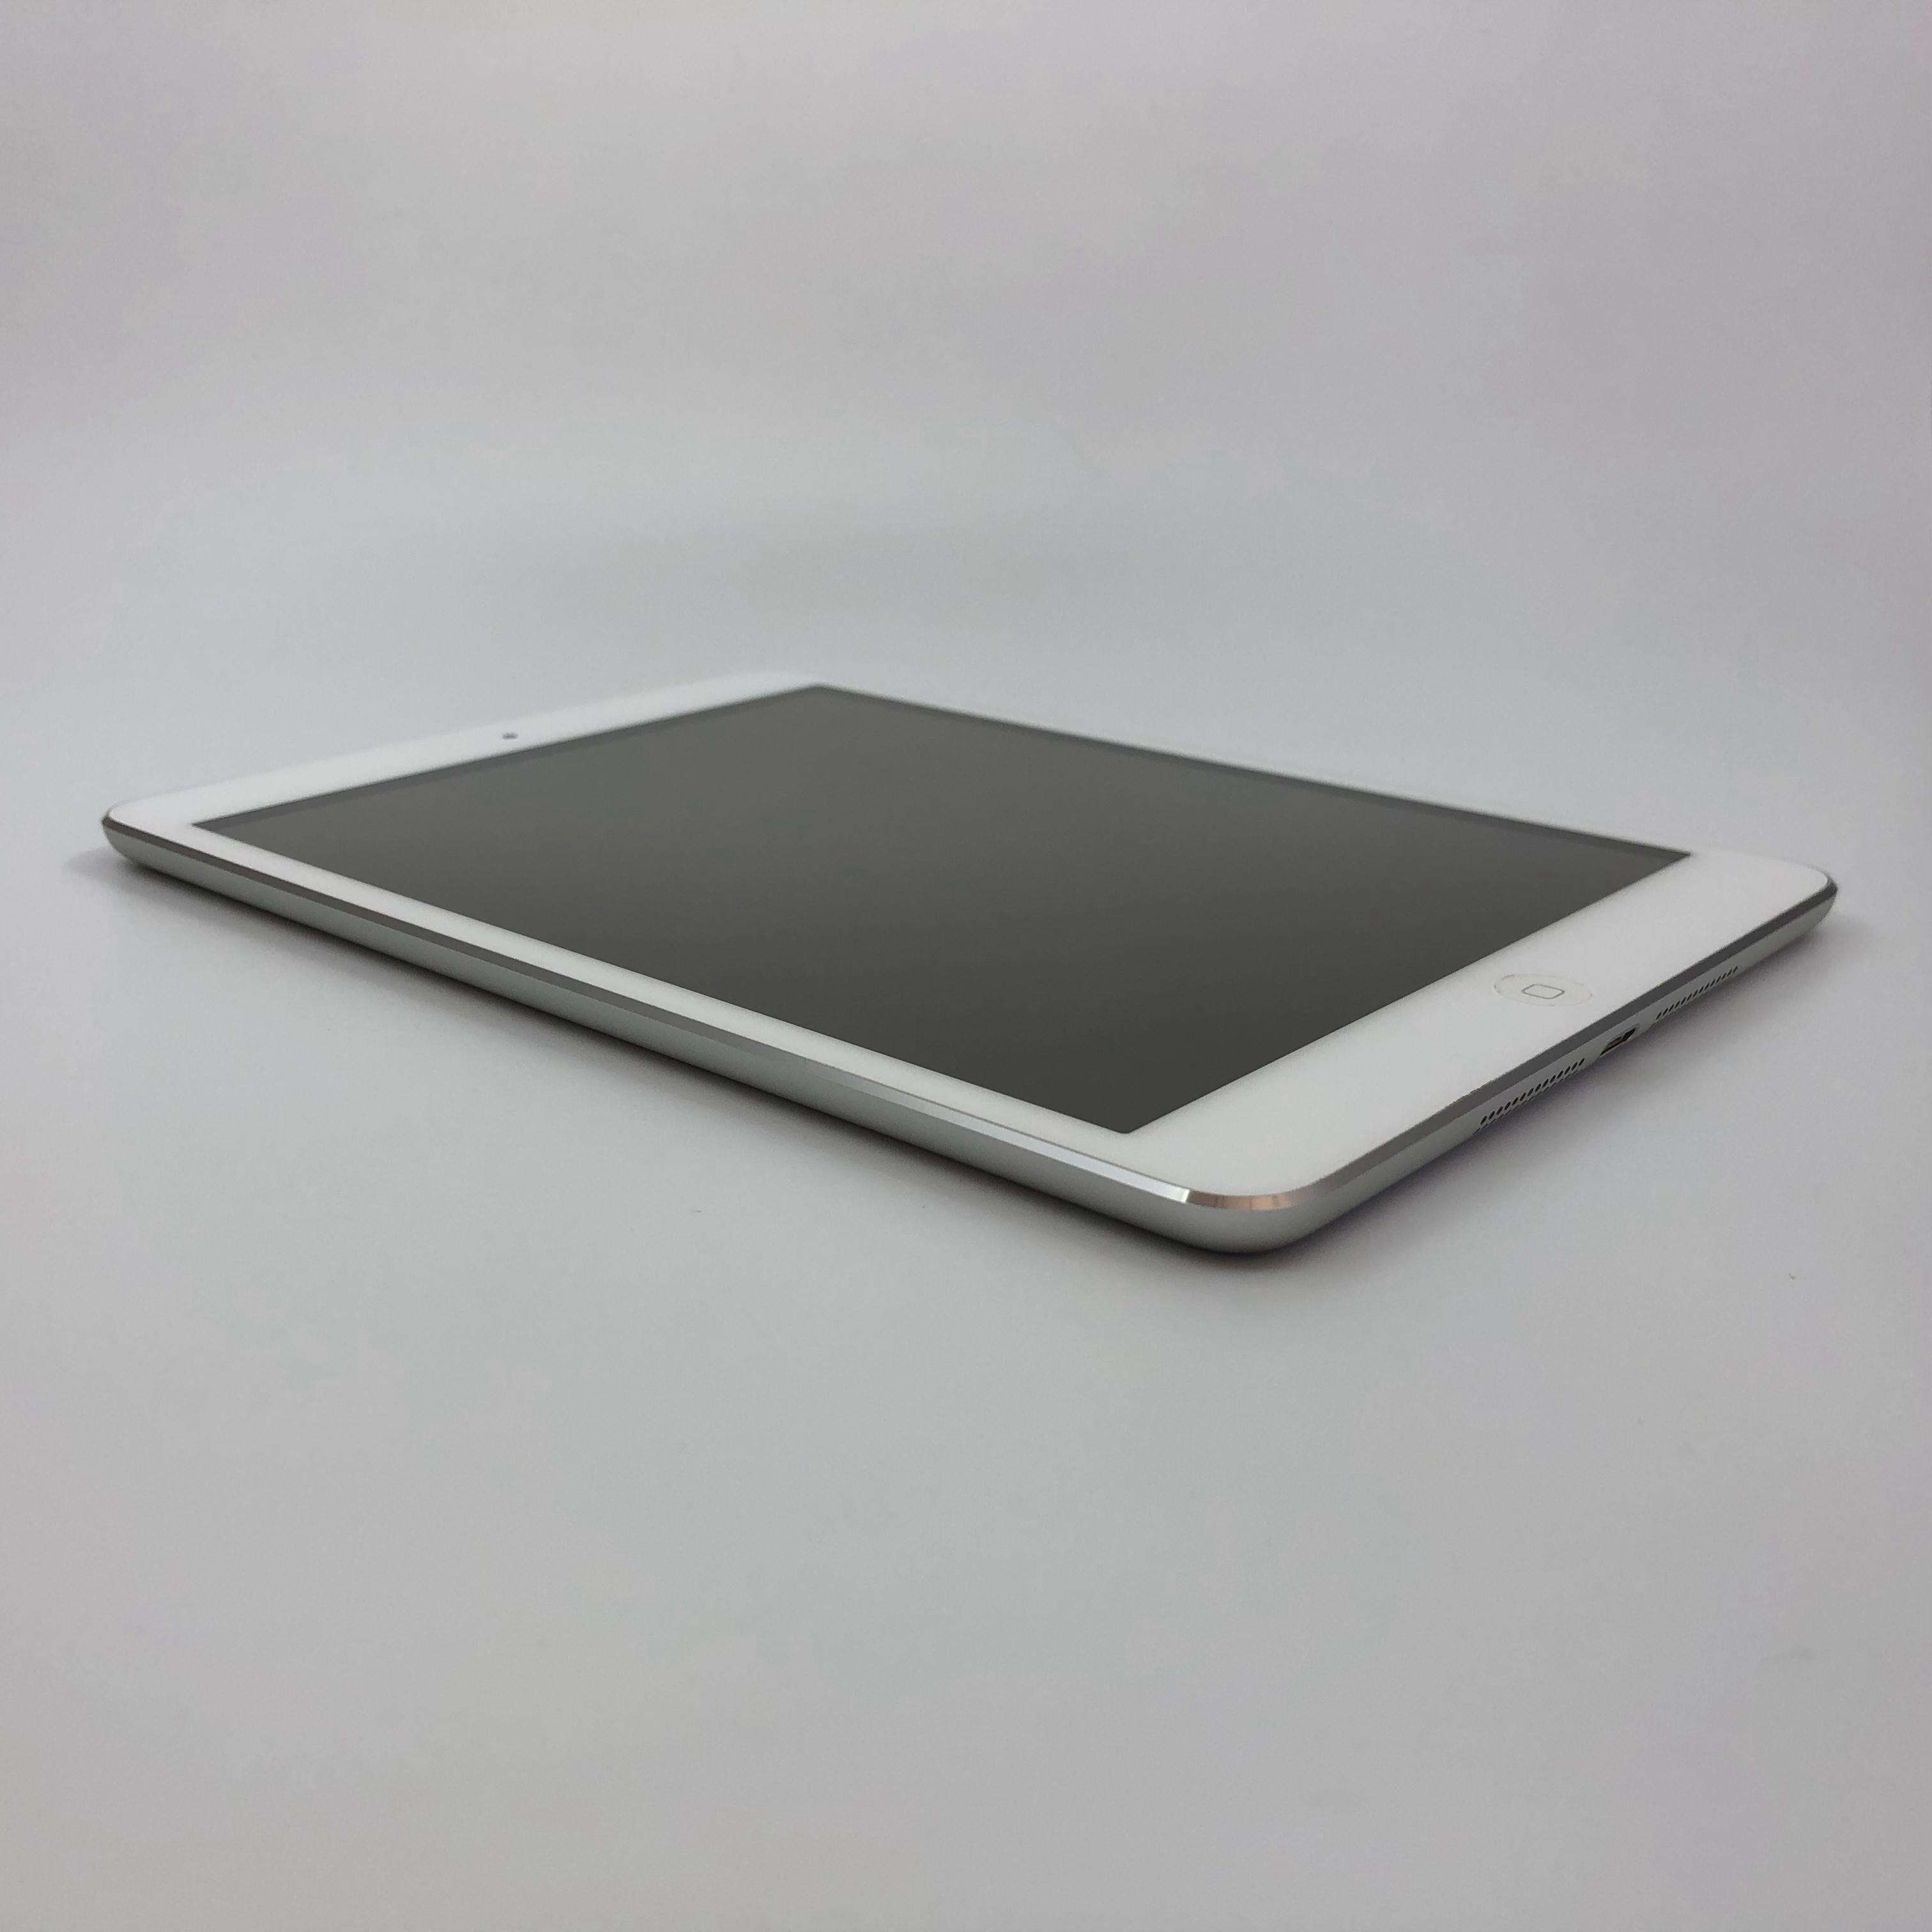 iPad mini 32G 国行Cellular版